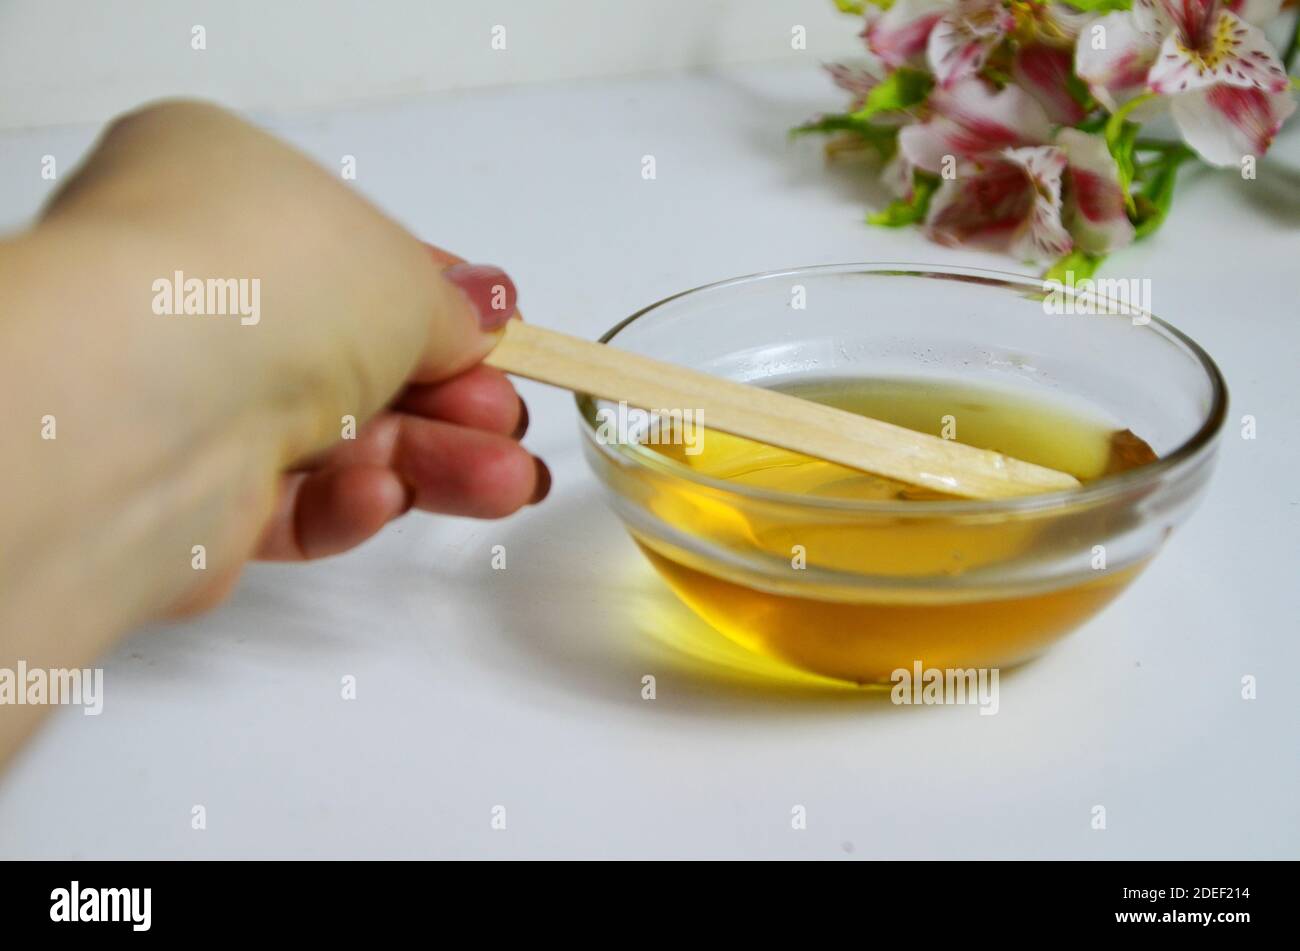 Immagine di zucchero liquido per capelli rimozione cera depilazione vaso di vetro di miele dorato chiodo di garofano con fiori di frangipani. Preparazione del trattamento naturale del corpo di bellezza Foto Stock